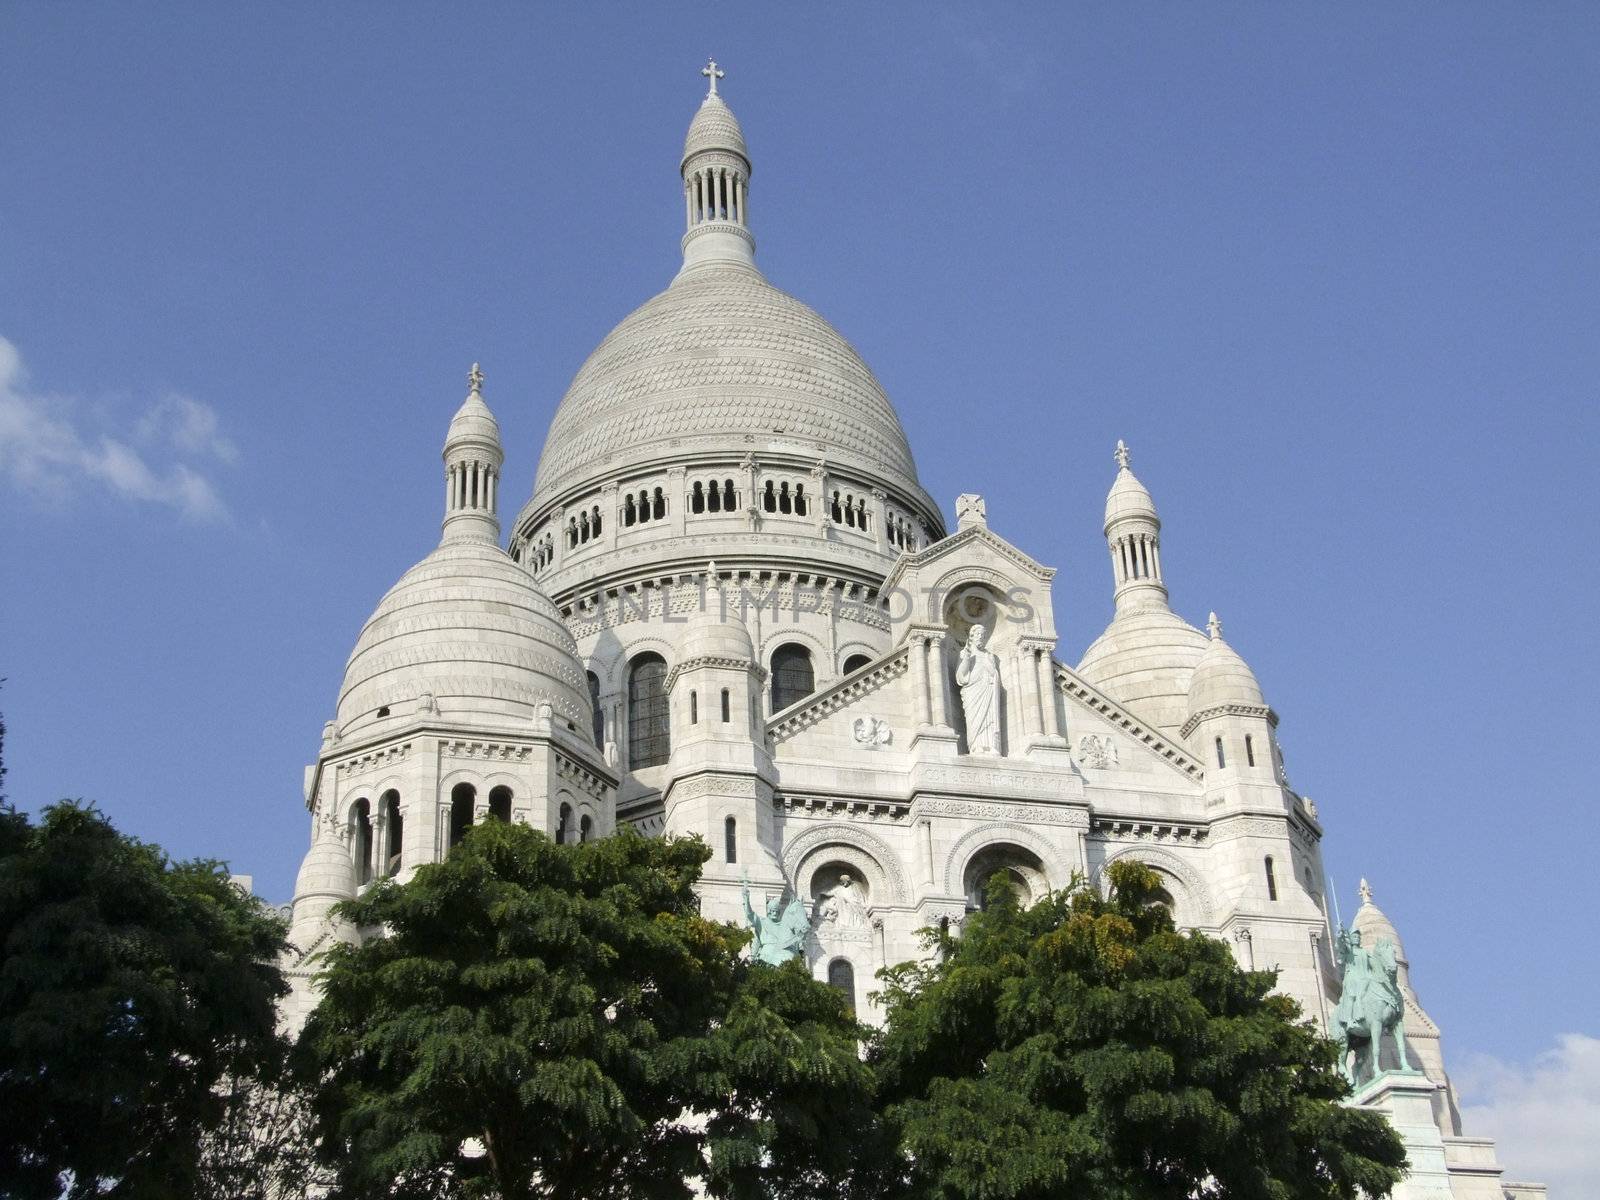 Sacre-Coeur Basilica at the Montmatre in Paris